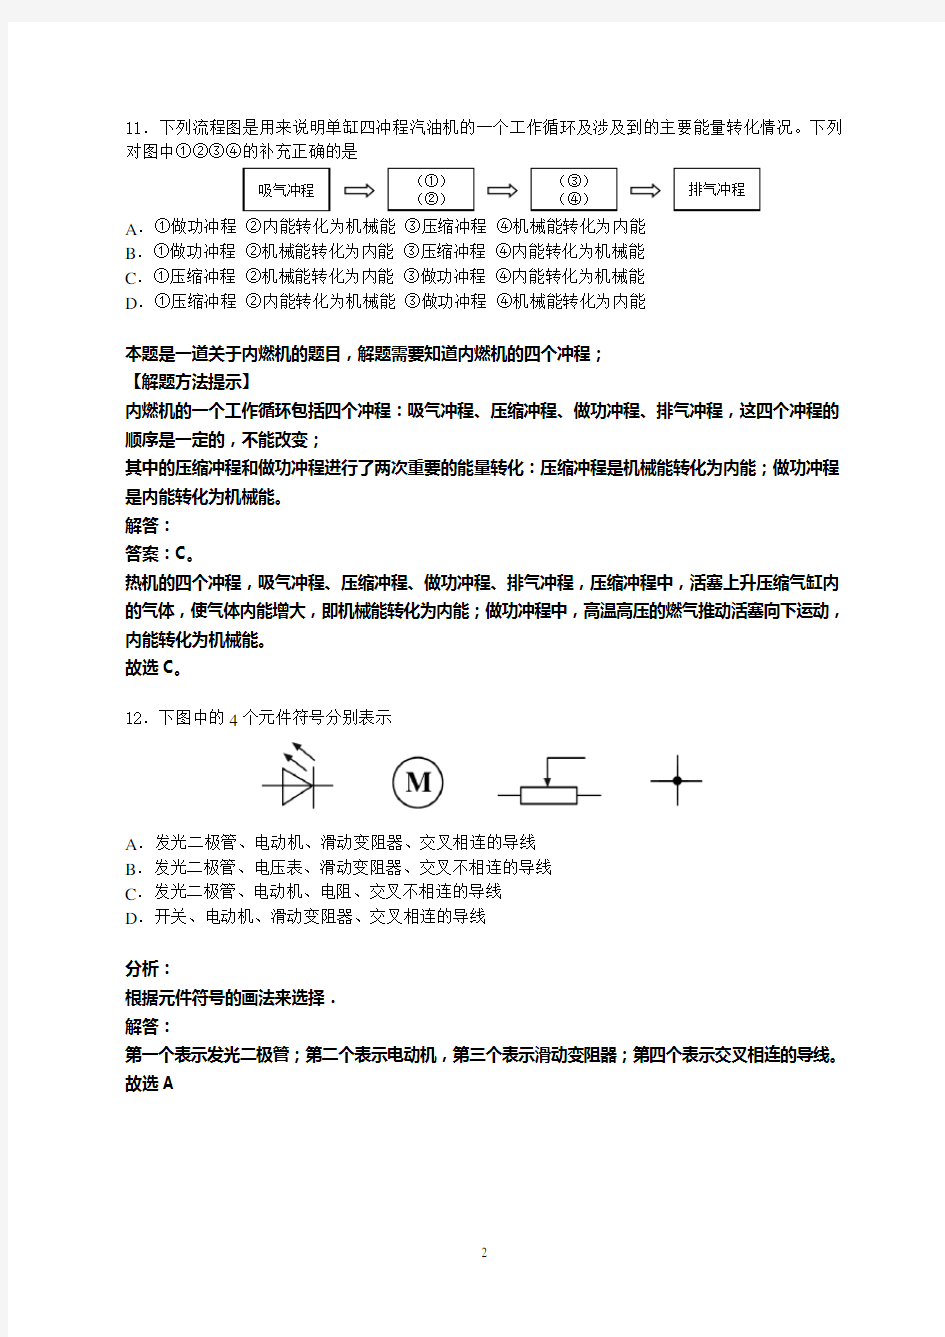 武汉市2014年元月调考物理试卷及答案详细解答